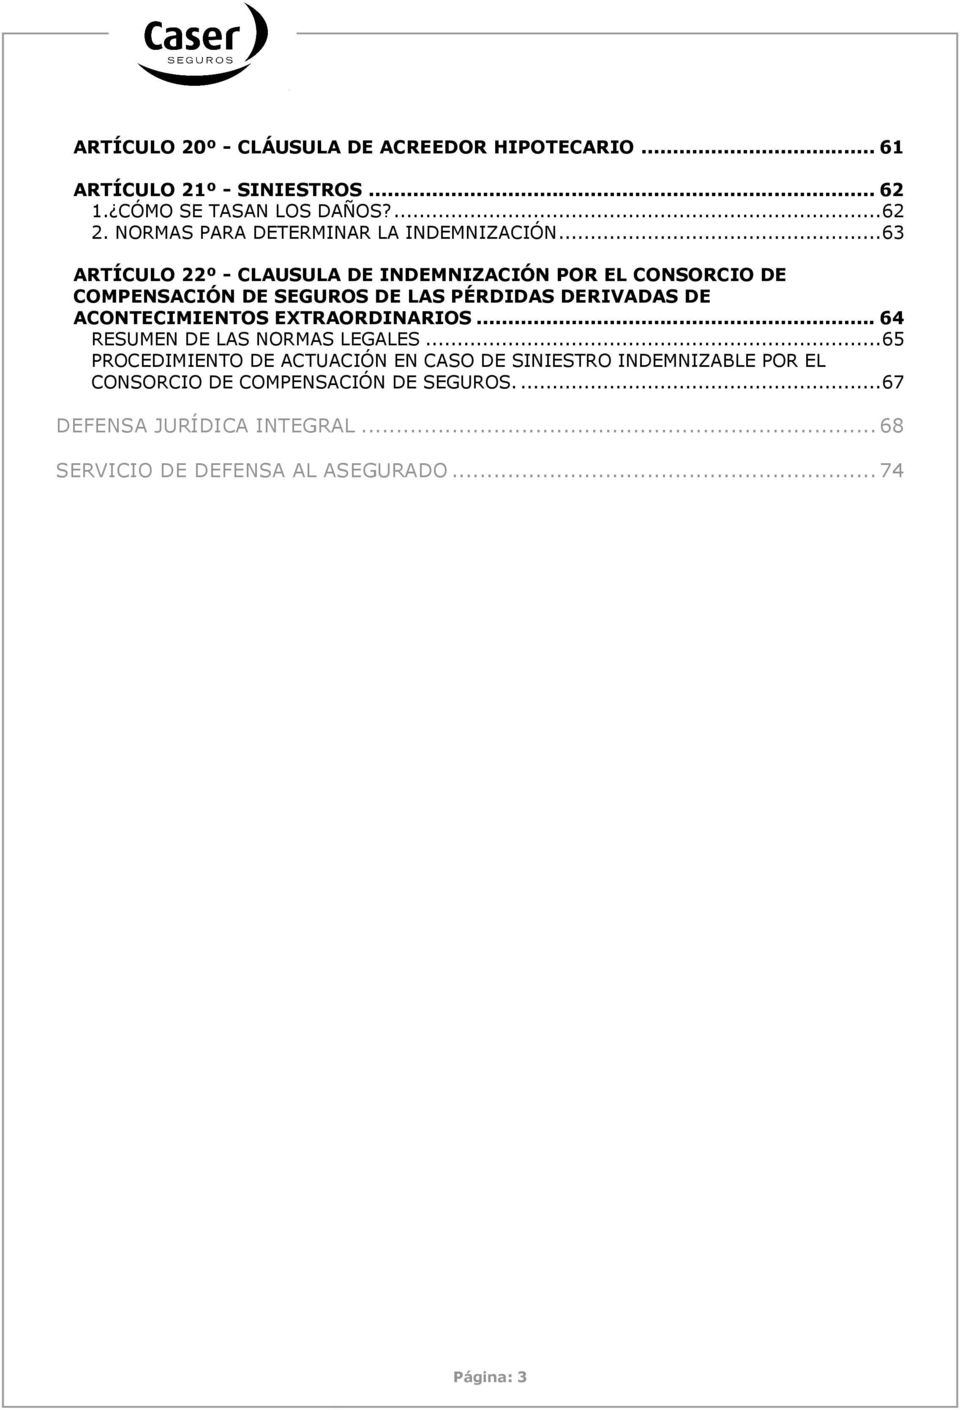 .. 63 ARTÍCULO 22º - CLAUSULA DE INDEMNIZACIÓN POR EL CONSORCIO DE COMPENSACIÓN DE SEGUROS DE LAS PÉRDIDAS DERIVADAS DE ACONTECIMIENTOS